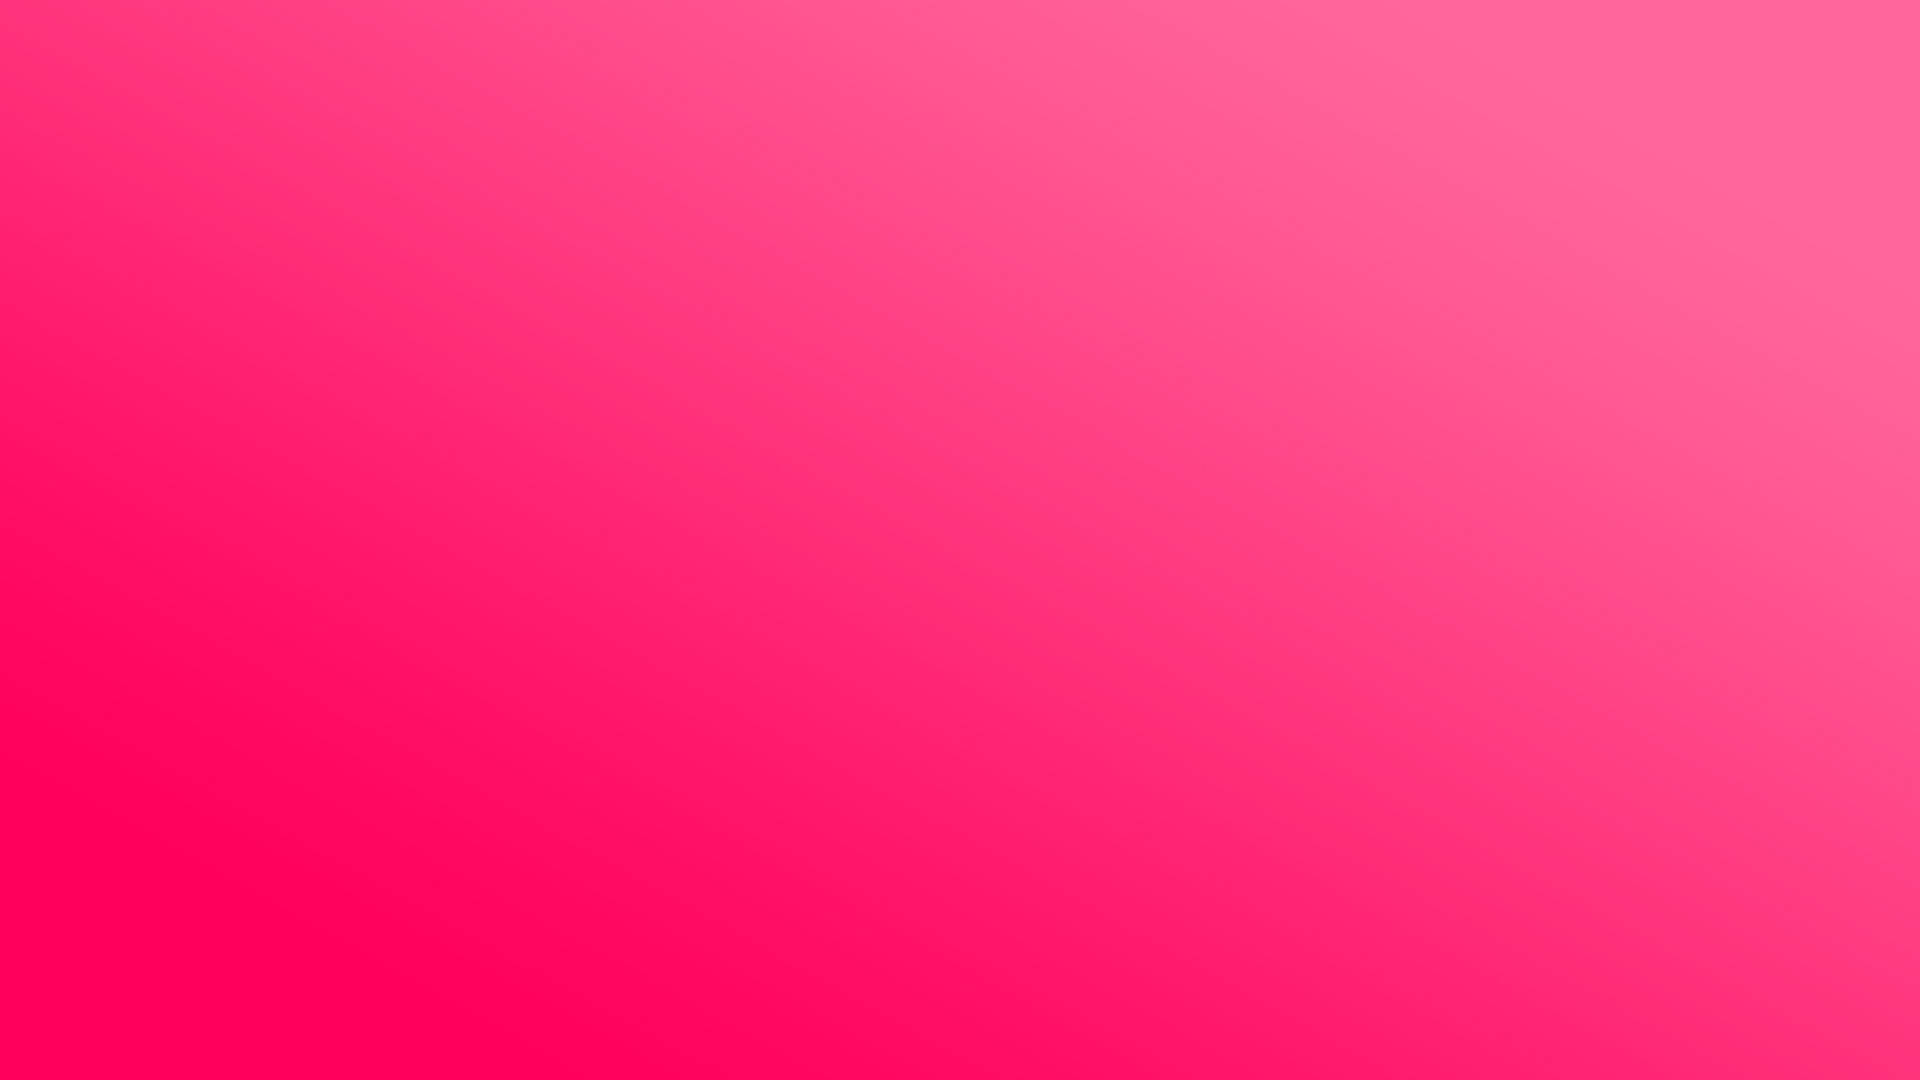 Solid Pink Light Color Background Background